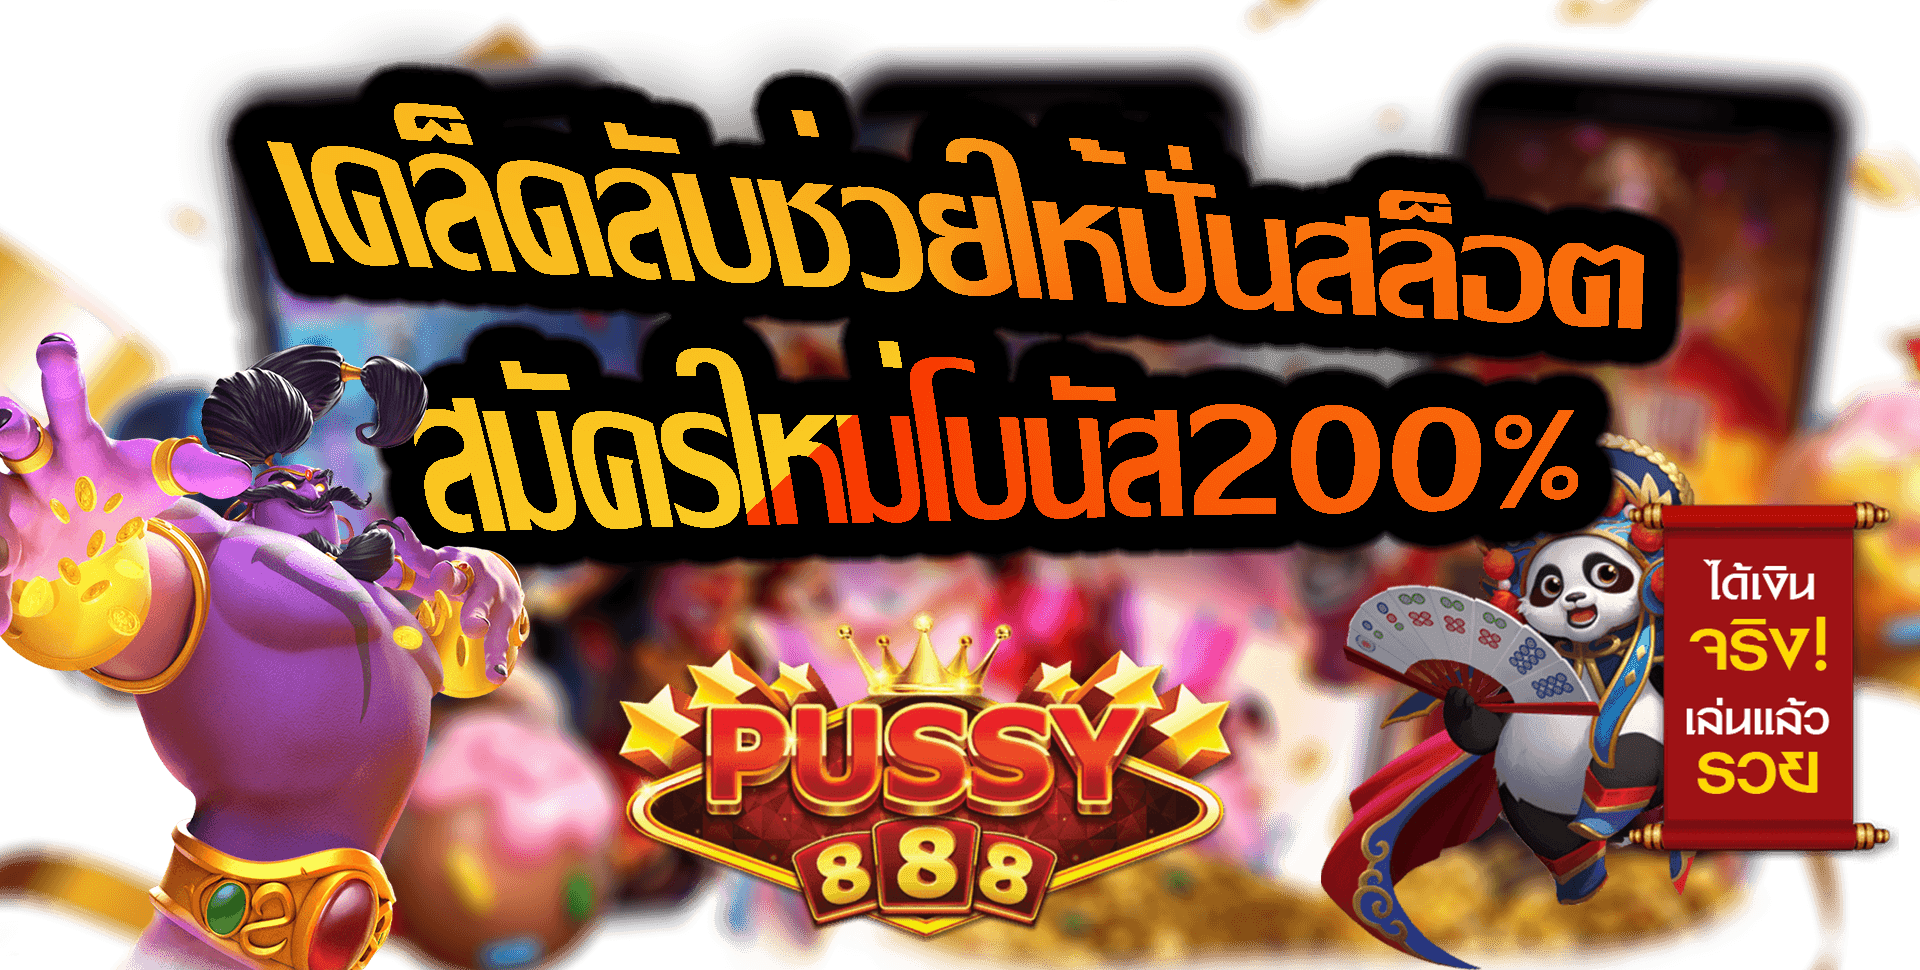 Pussy888-2022-สมัครใหม่โบนัส200%